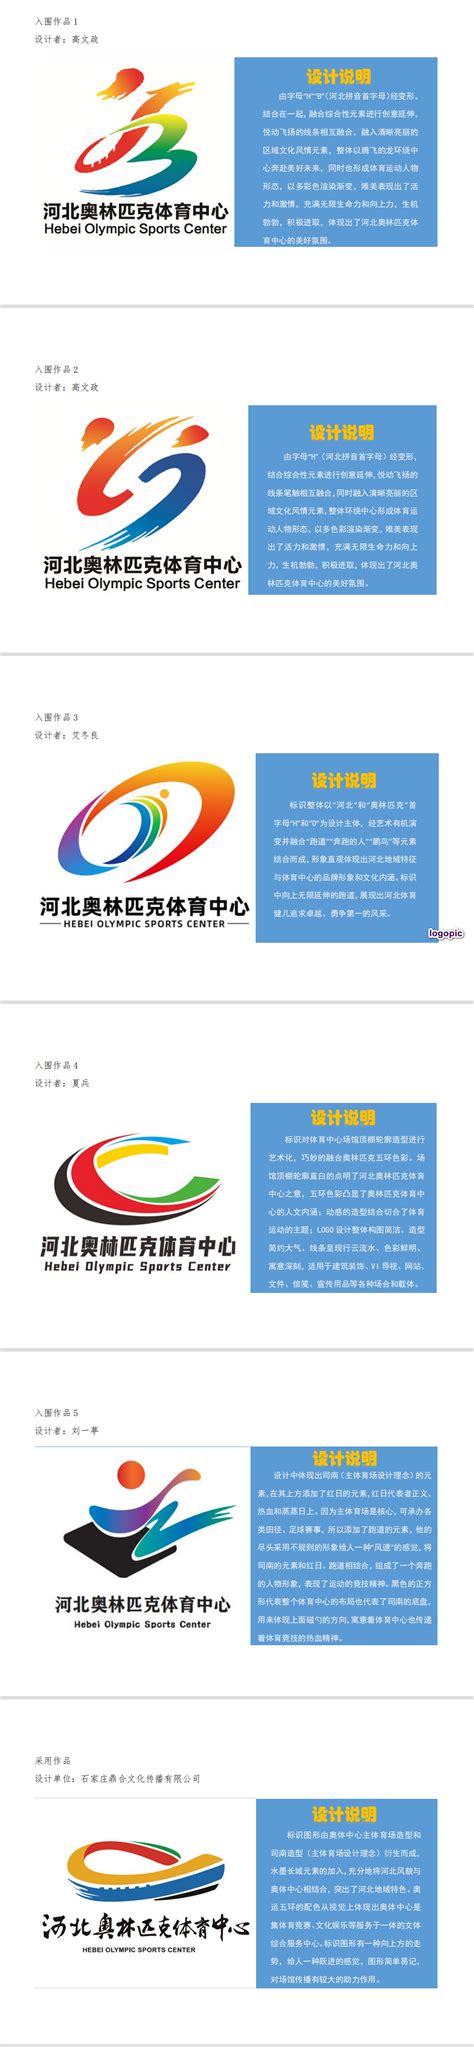 新津县基层政务公开标准化规范征集LOGO评选结果-设计揭晓-设计大赛网